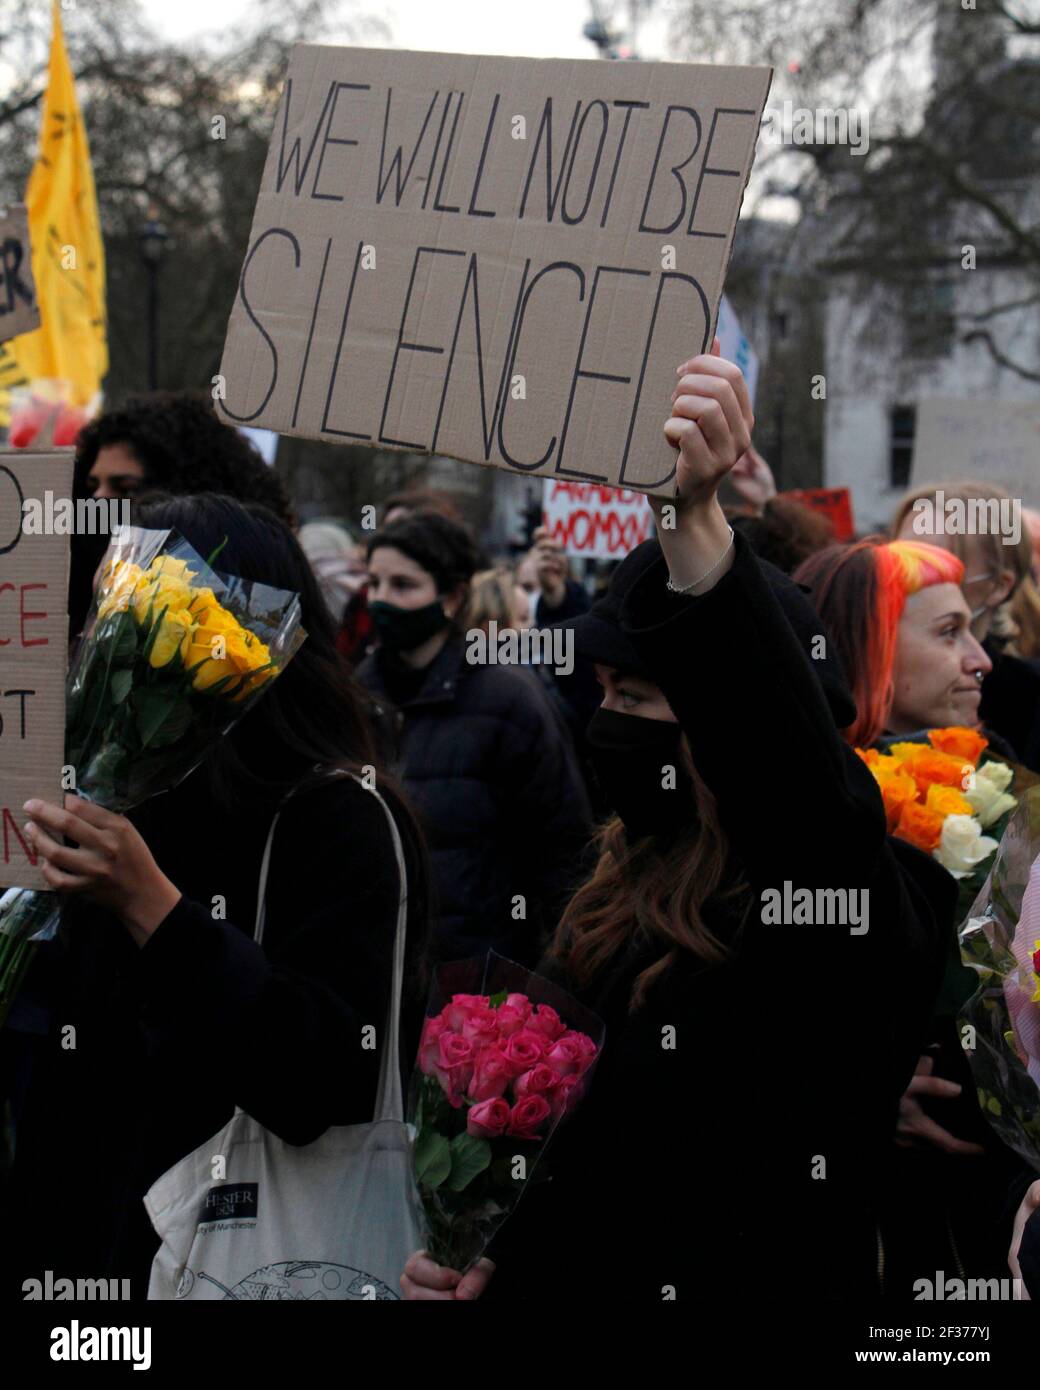 Londres, Royaume-Uni. 15 mars 2021. Une femme porte un panneau indiquant « nous ne serons pas réduits au silence » en réponse au récent projet de loi de restriction de protestation. Londres. 15 mars 2021 crédit : One Up Top Editorial Images/Alamy Live News Banque D'Images